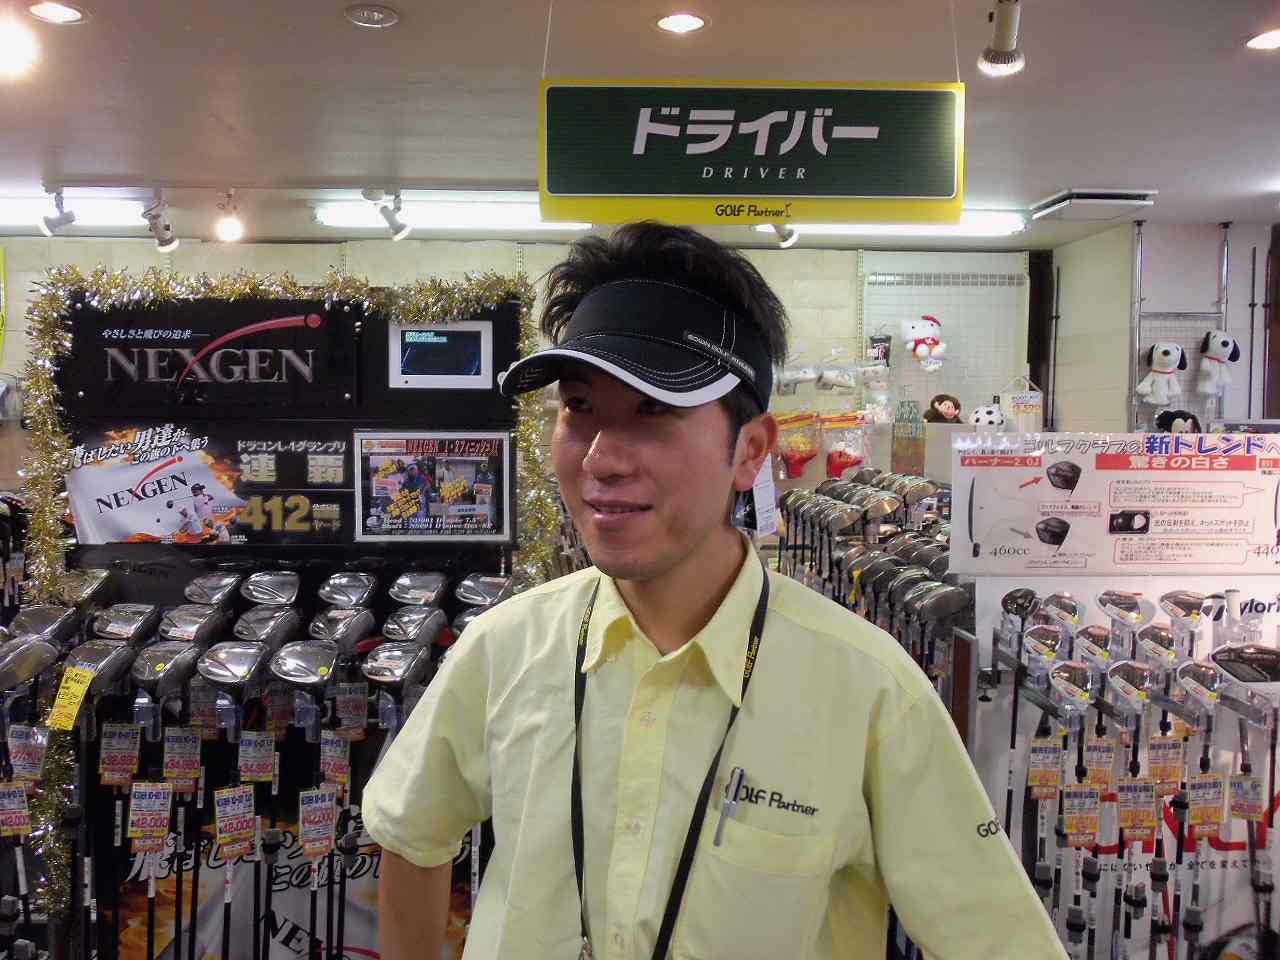 http://www.golfpartner.co.jp/938/2011/05/25/101_5042.jpg